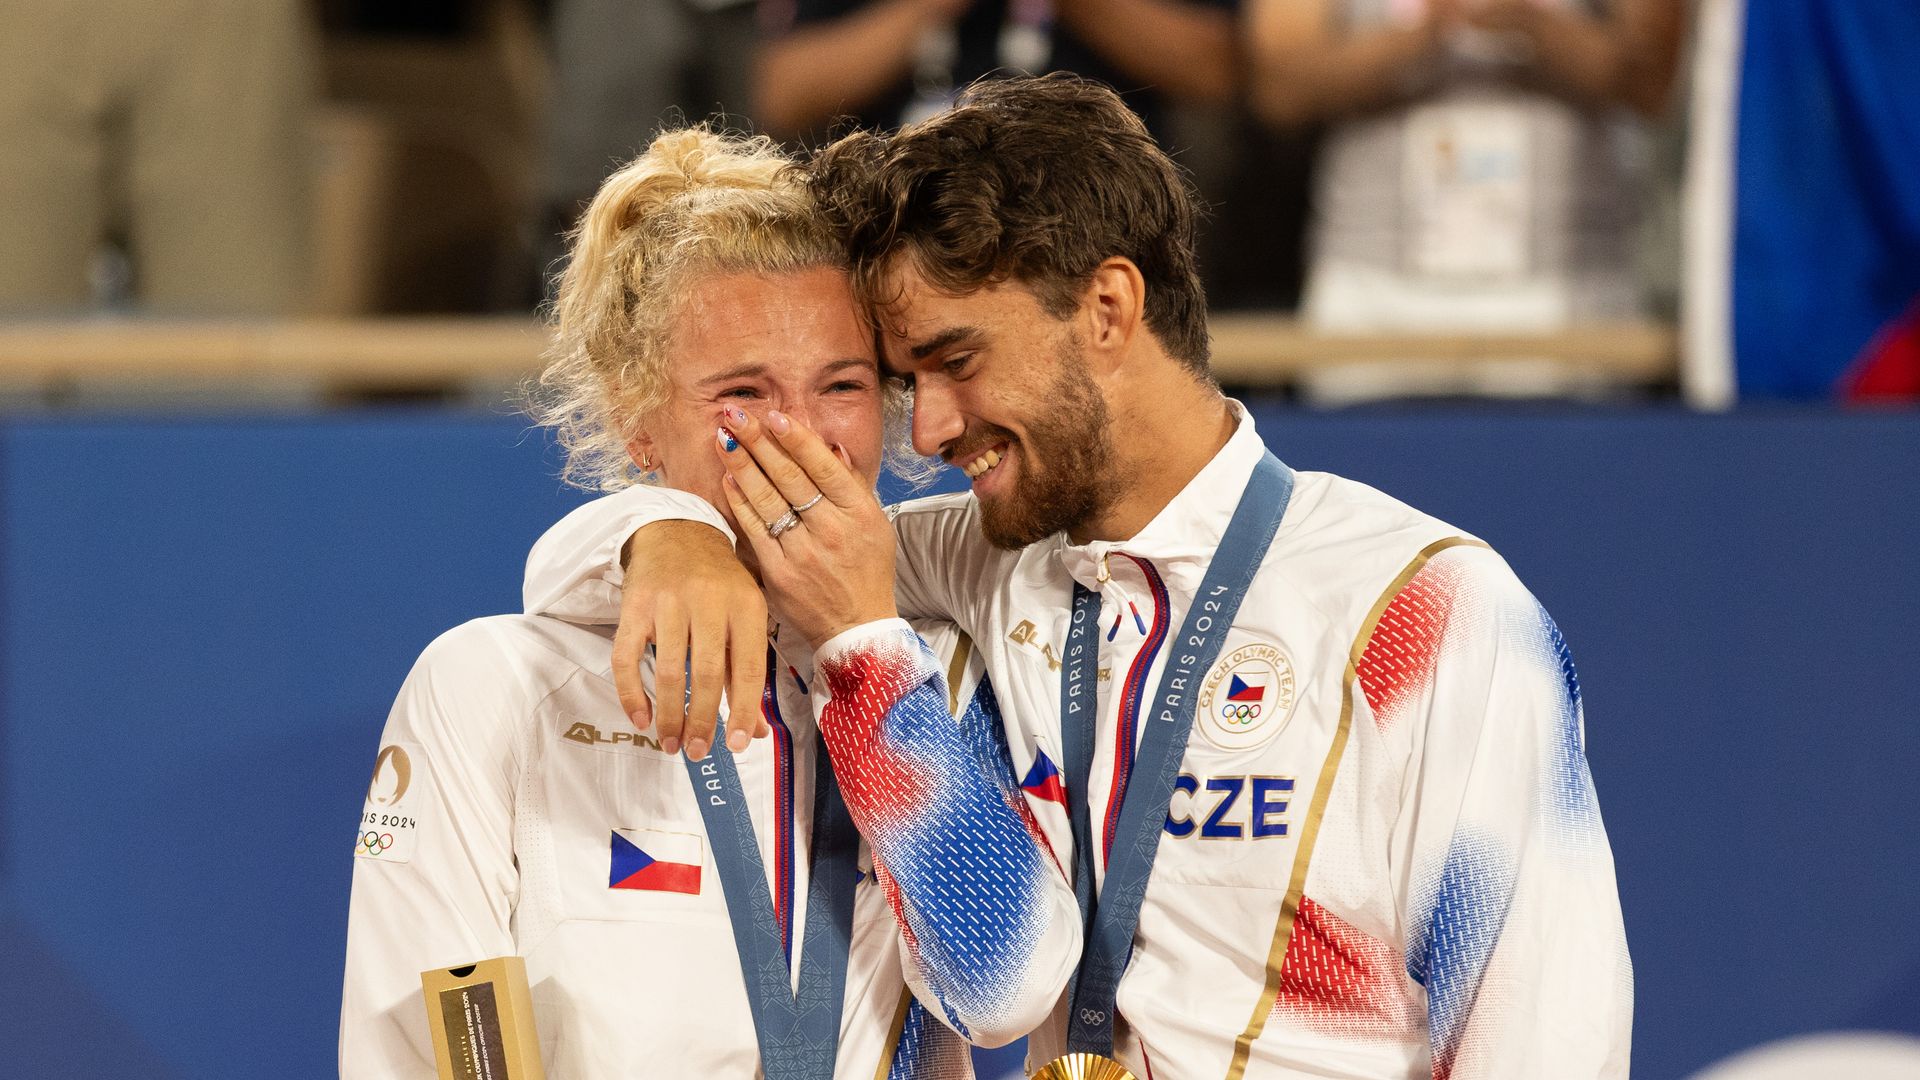 Katerina Siniakova y Tomas Machac ganan el oro juntos tras romper poco antes de los Juegos Olímpicos